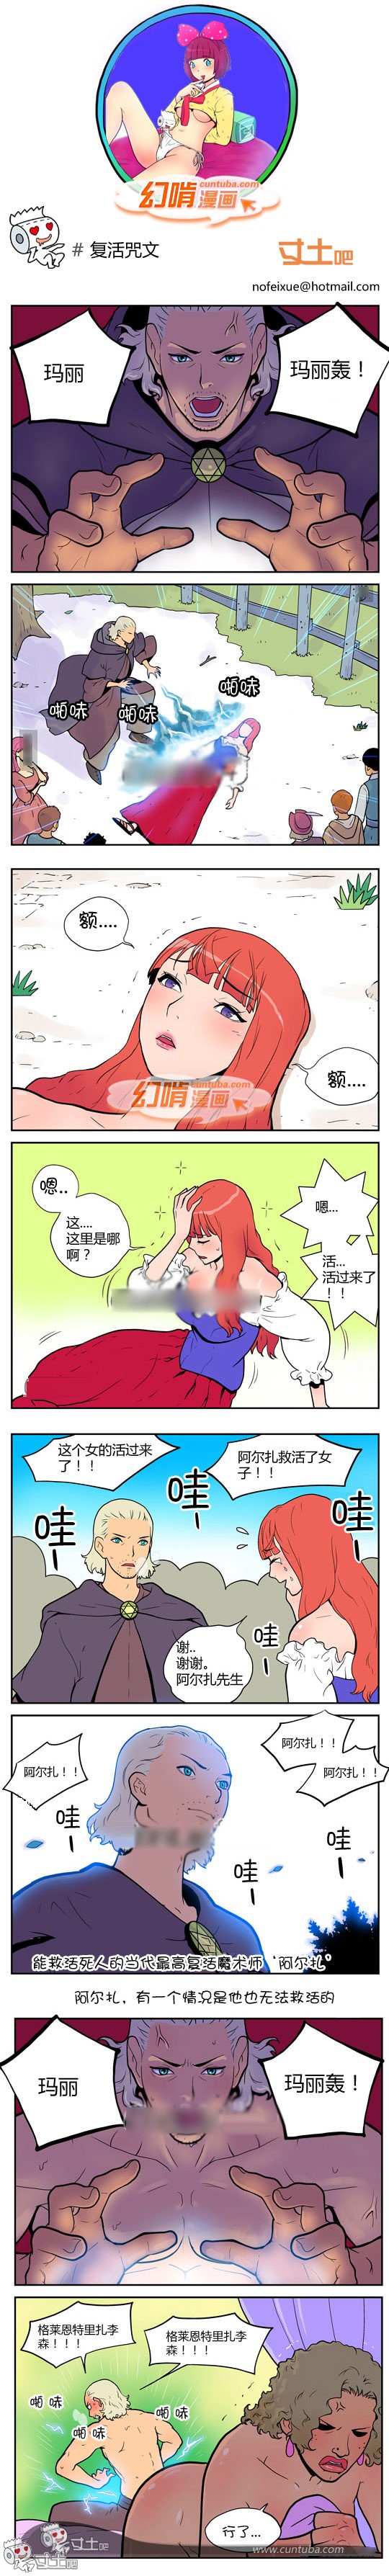 幻啃漫画复活咒文